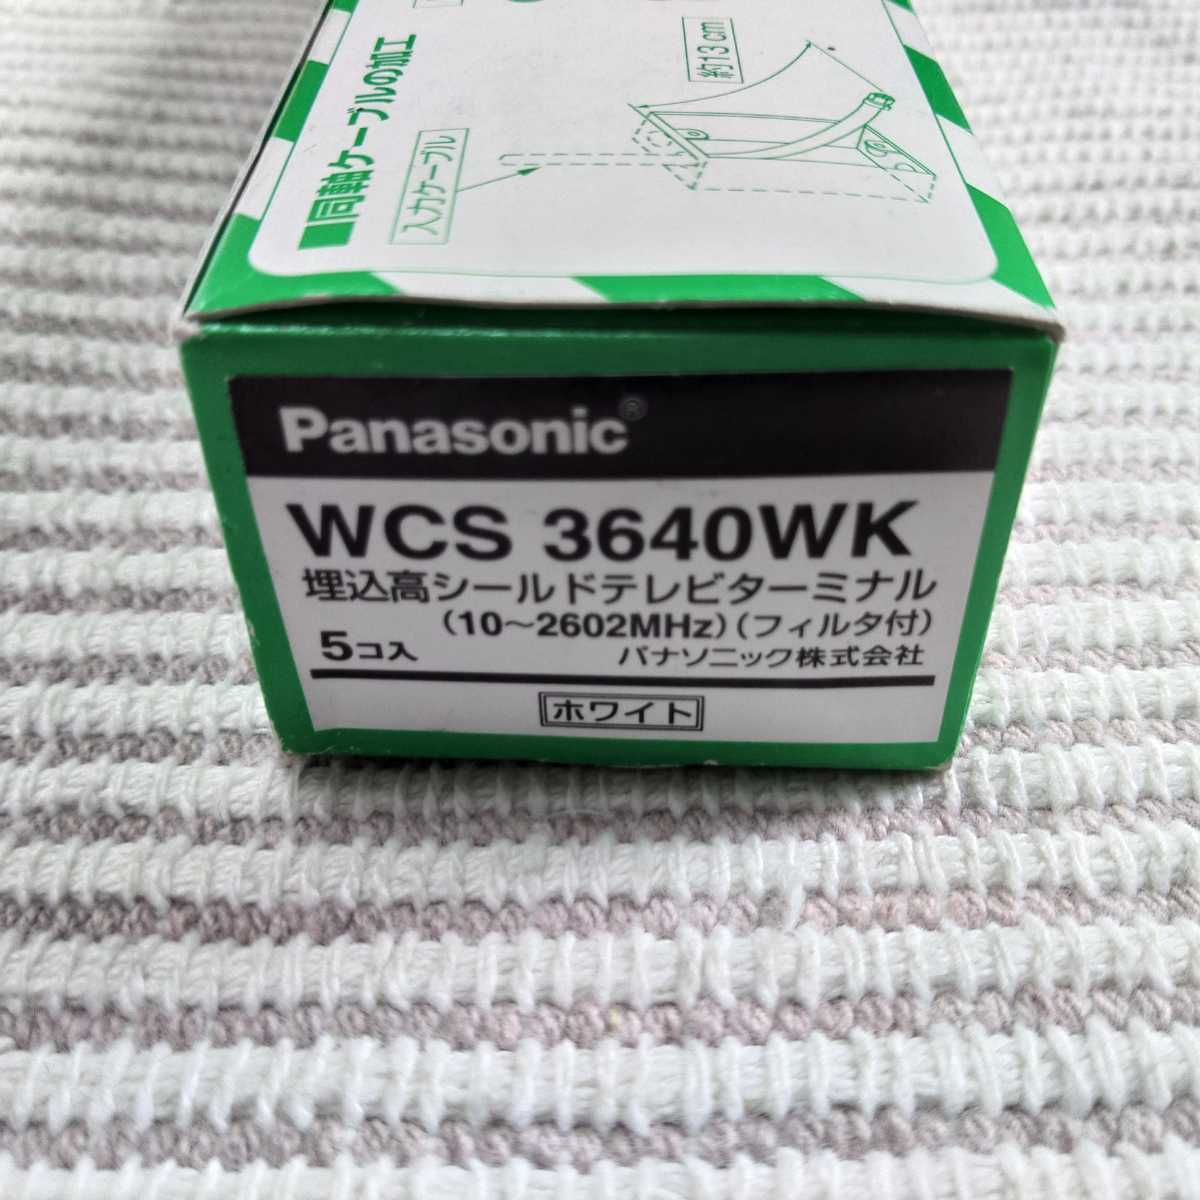  Panasonic Cosmo широкий WCS3640W высота защита TV терминал новый старый 5 шт 